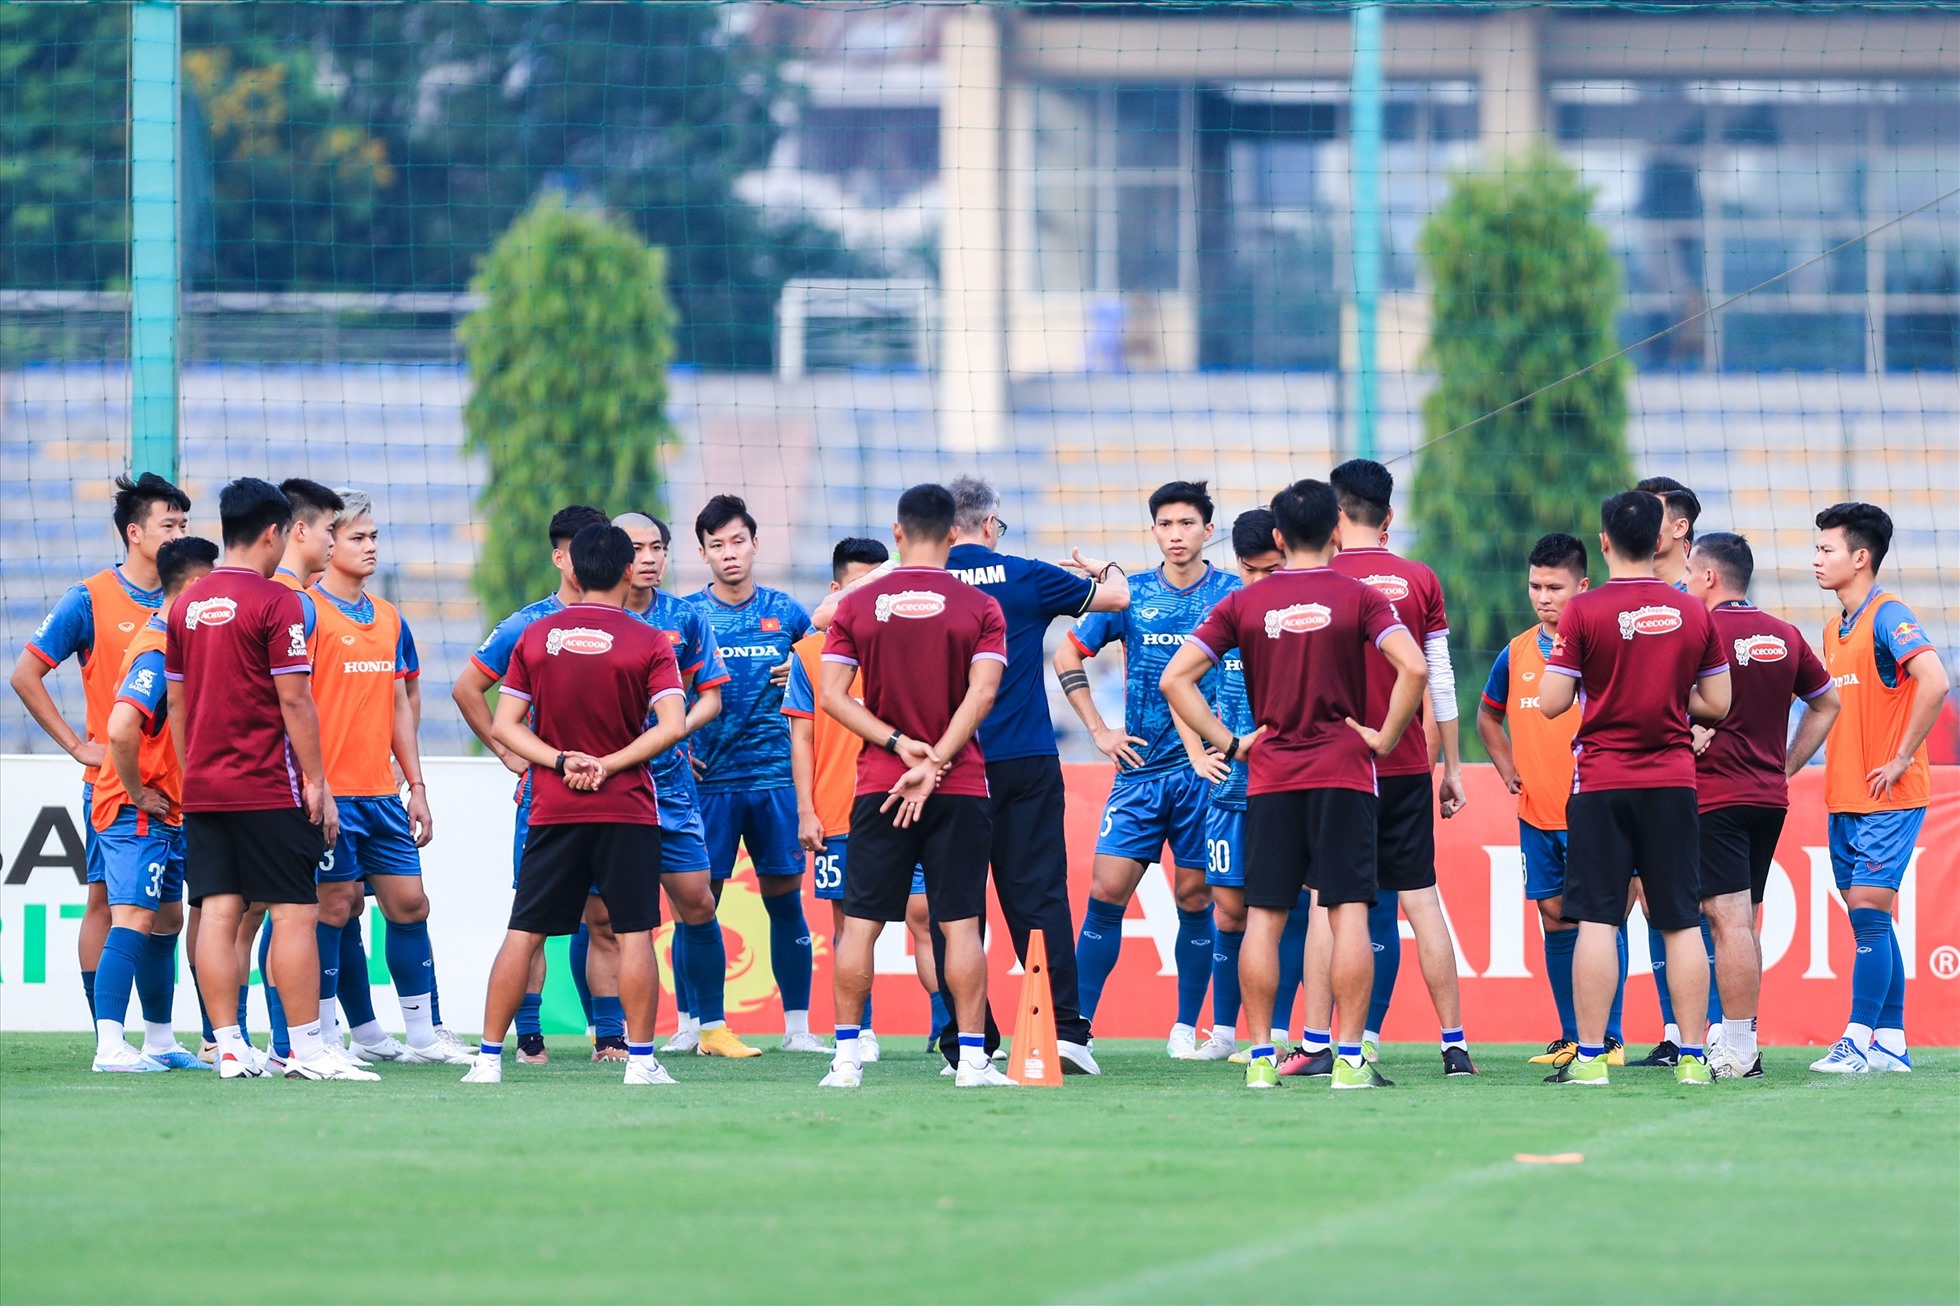 Ngày 11.6, đội tuyển Việt Nam và U23 Việt Nam tiếp tục có buổi tập tại sân bóng Trung tâm đào tạo bóng đá trẻ Việt Nam (Hà Nội) để chuẩn bị cho 2 trận đấu giao hữu với đối thủ Hong Kong (Trung Quốc) và Syria.